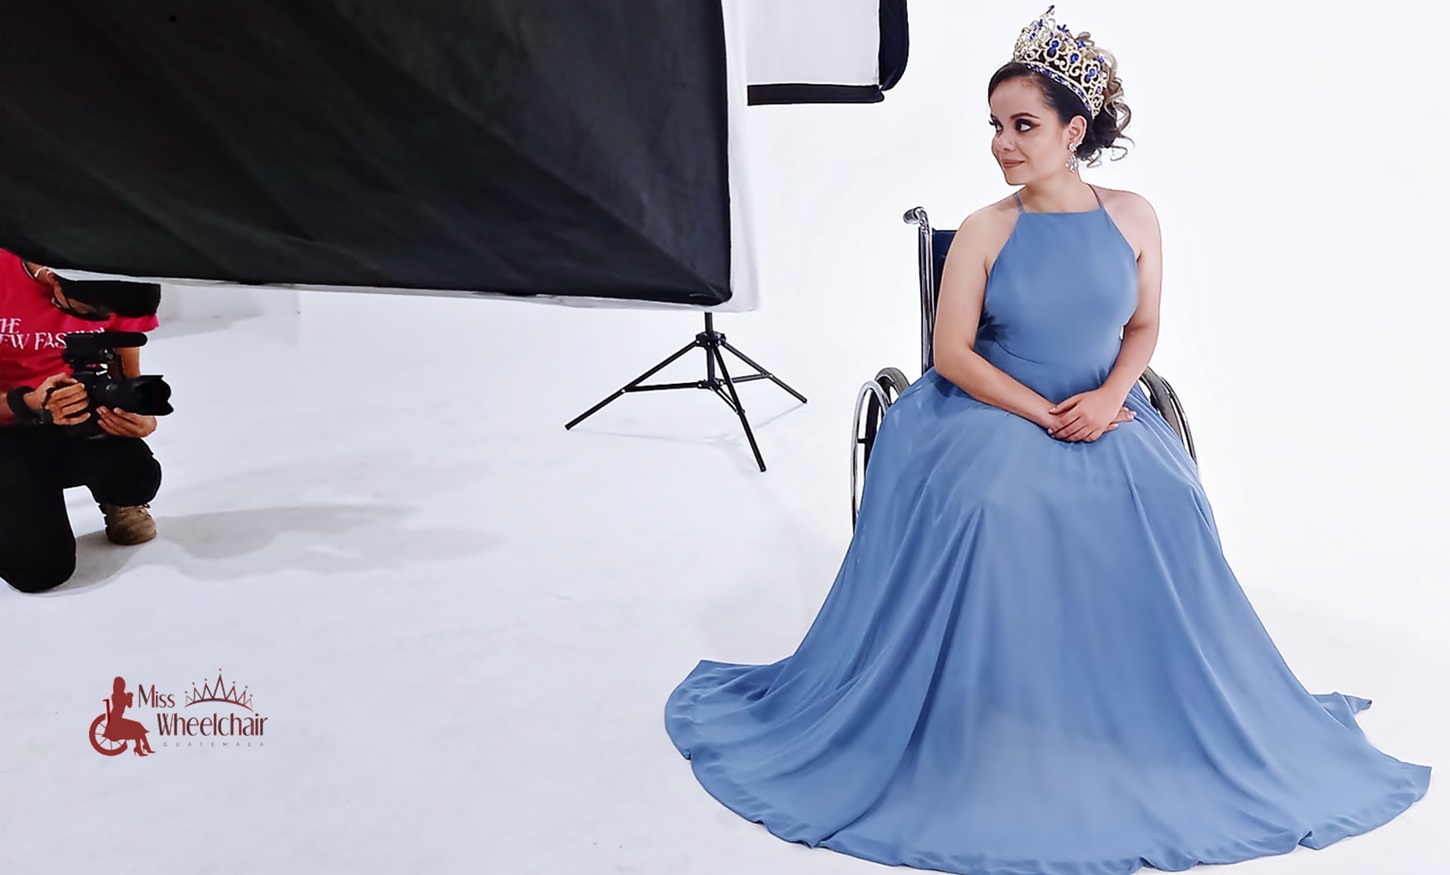 En su silla de ruedas, con su corona y vestida con un vestido de noche color azul tenue sin brazos, María posa para un fotógrafo en un estudio fotográfico color blanco. 